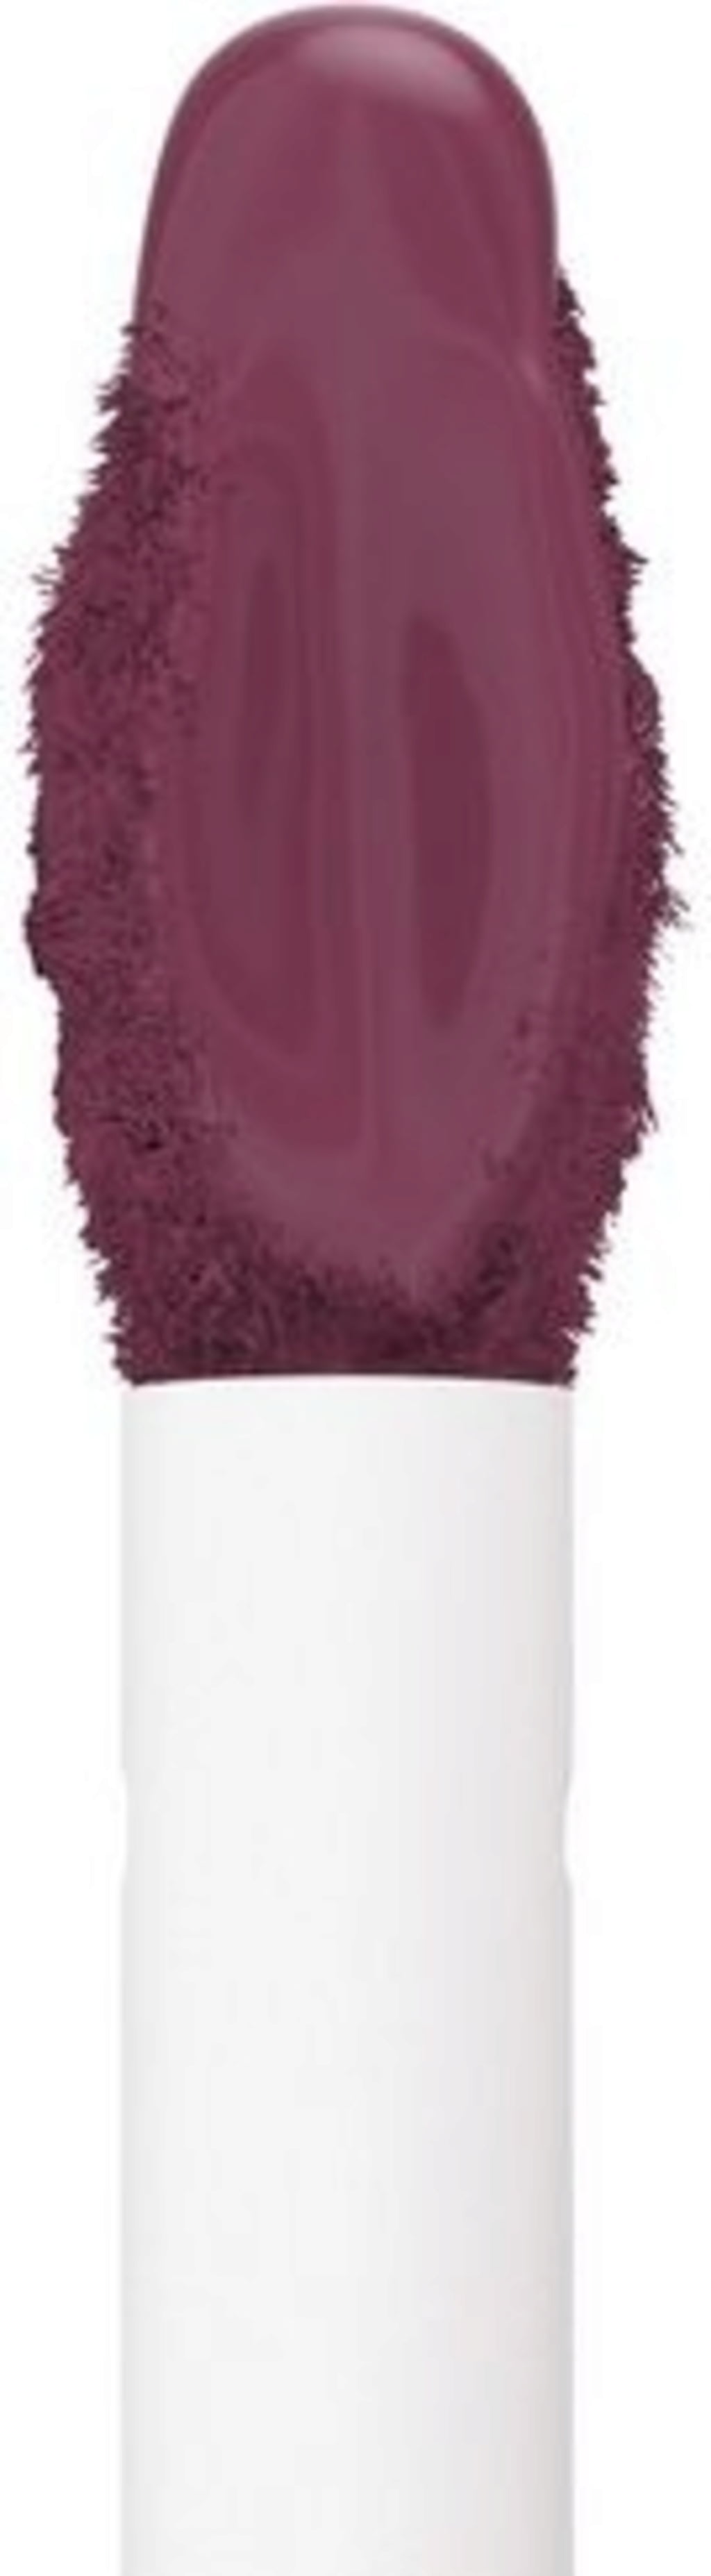  NYX PROFESSIONAL MAKEUP Lip Lingerie XXL Matte Liquid Lipstick  - Bust-Ed (Purple Mauve) : Beauty & Personal Care